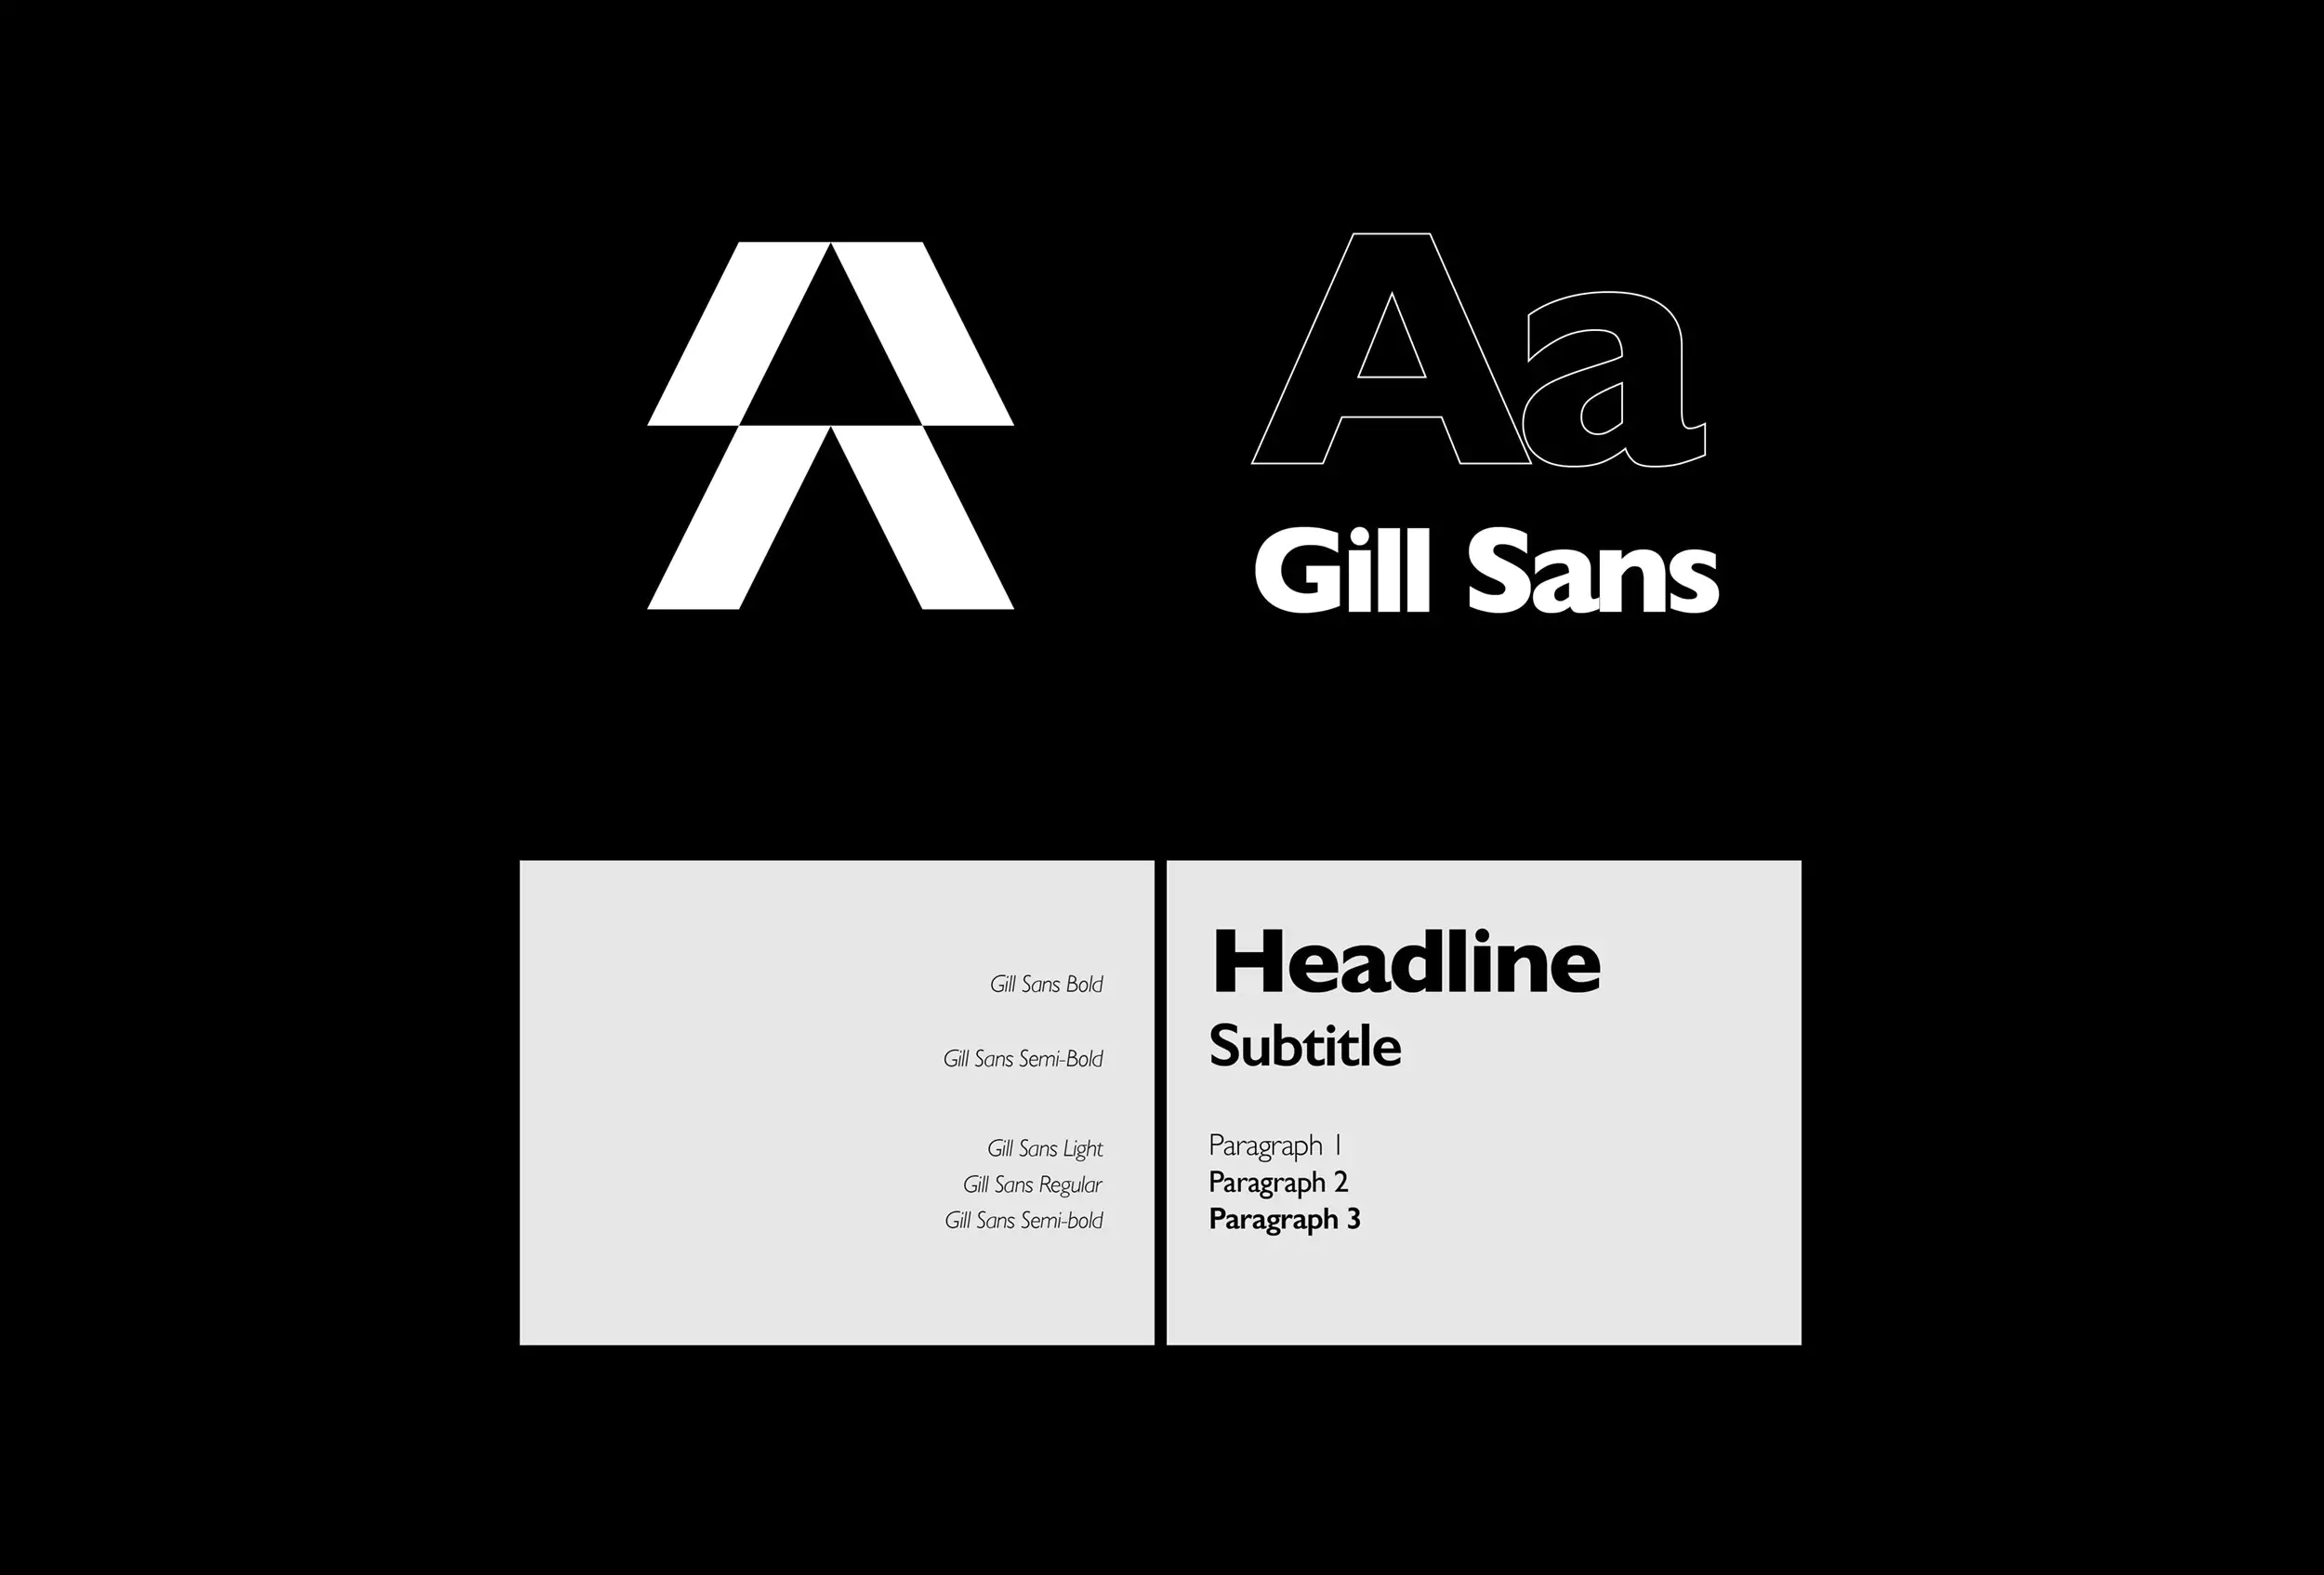 Skillrep Visual Identity - Typography